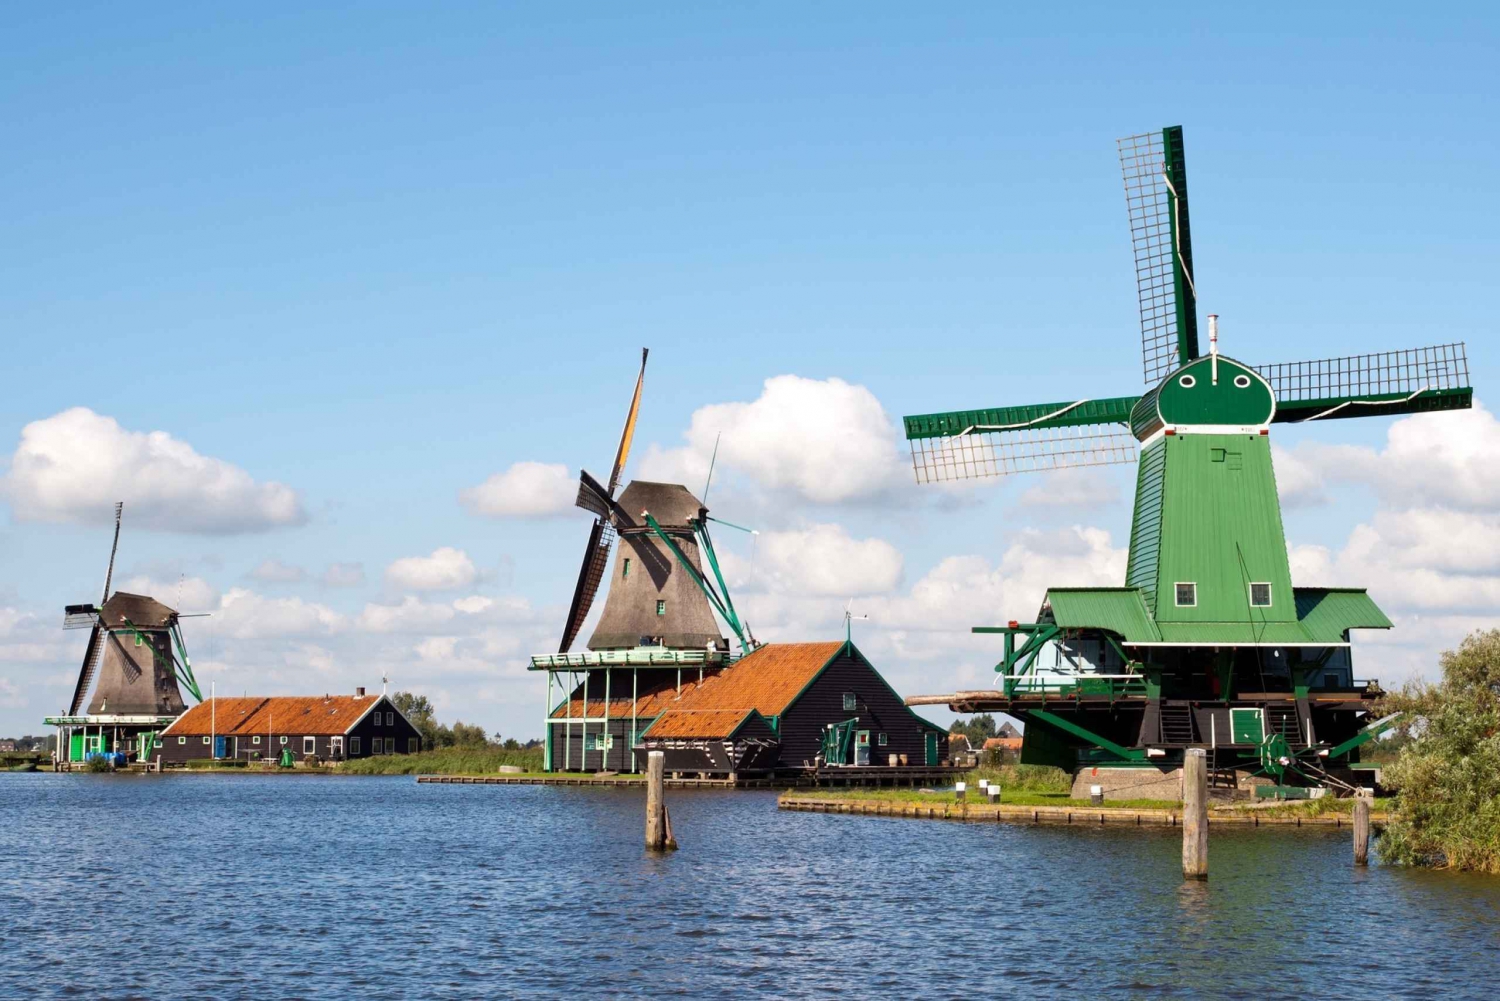 Vive el Encanto de Zaanse Schans Excursión de 3 horas Ámsterdam